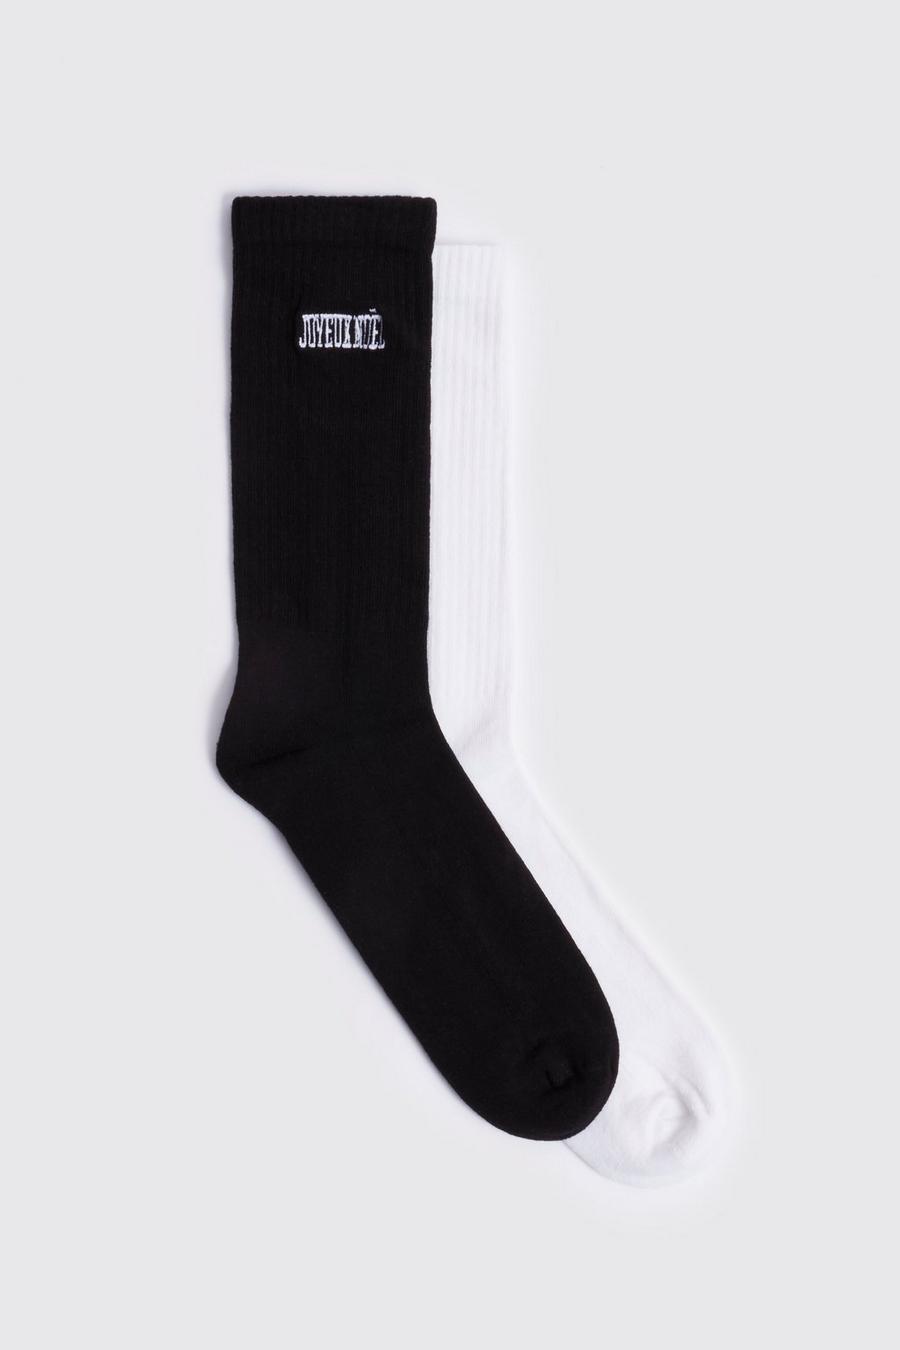 Pack de 2 pares de calcetines con bordado Joeux Noel, Black negro